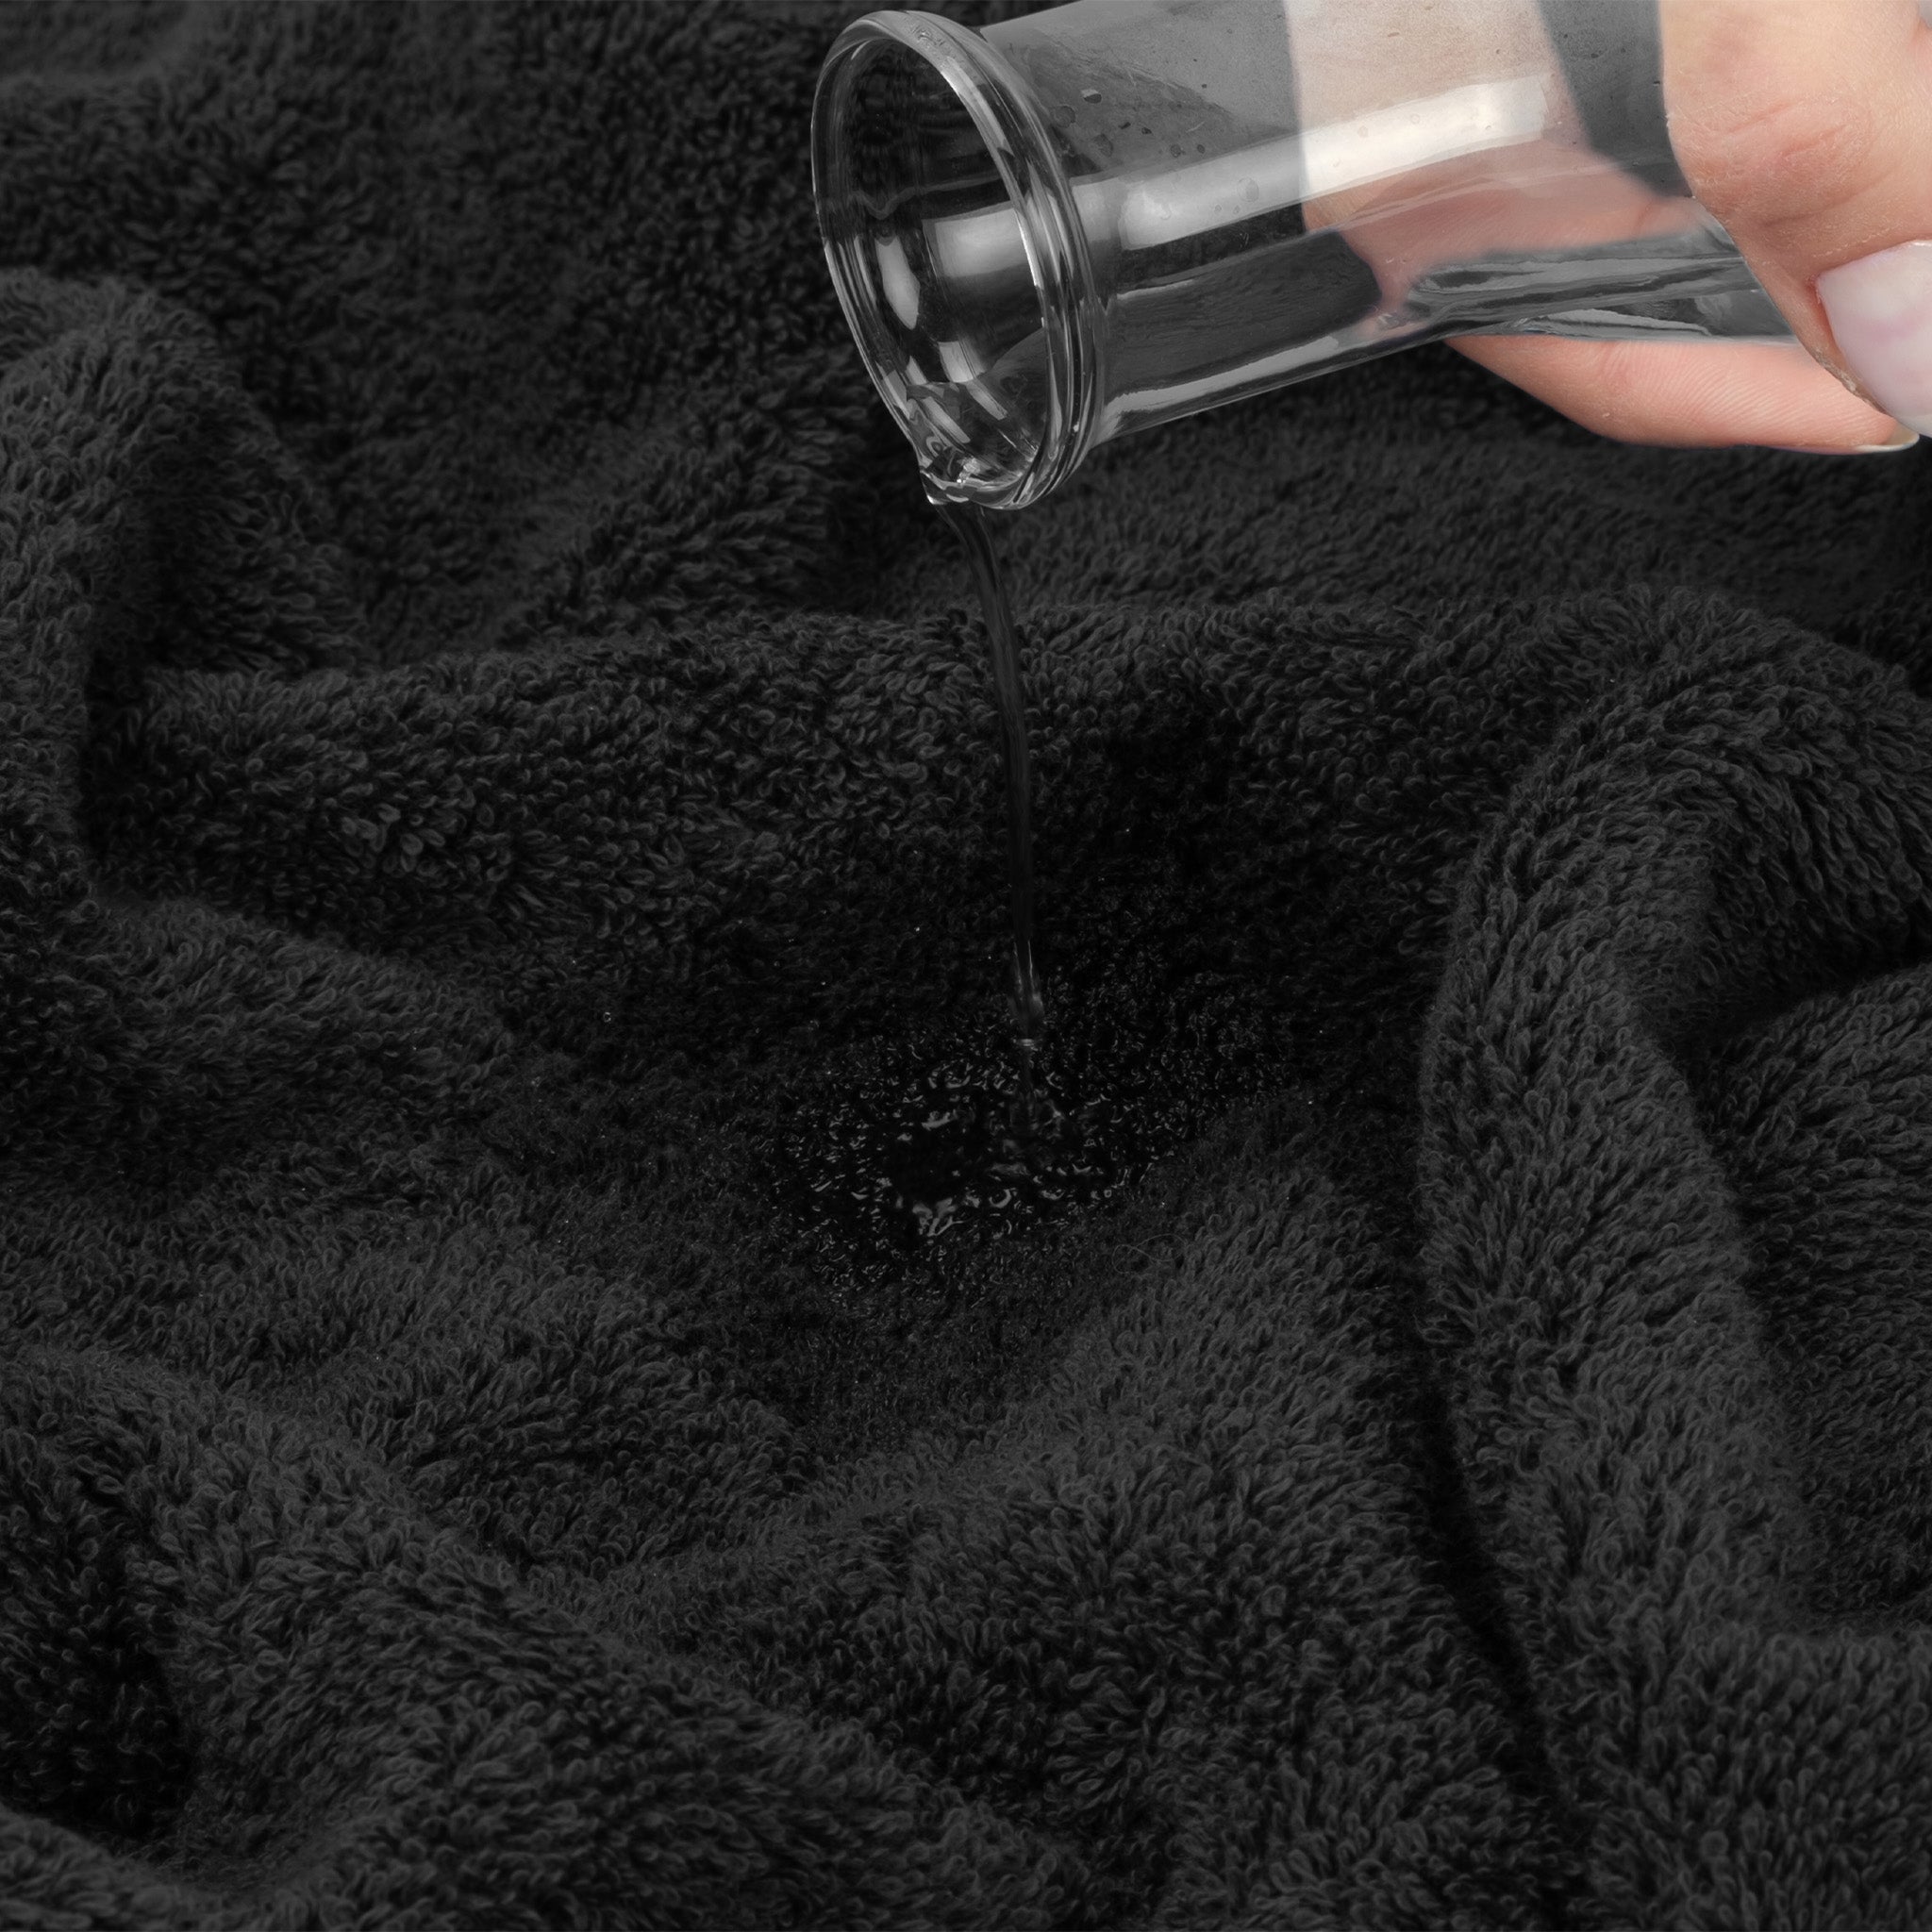 American Soft Linen 100% Turkish Cotton 4 Piece Washcloth Set black-5